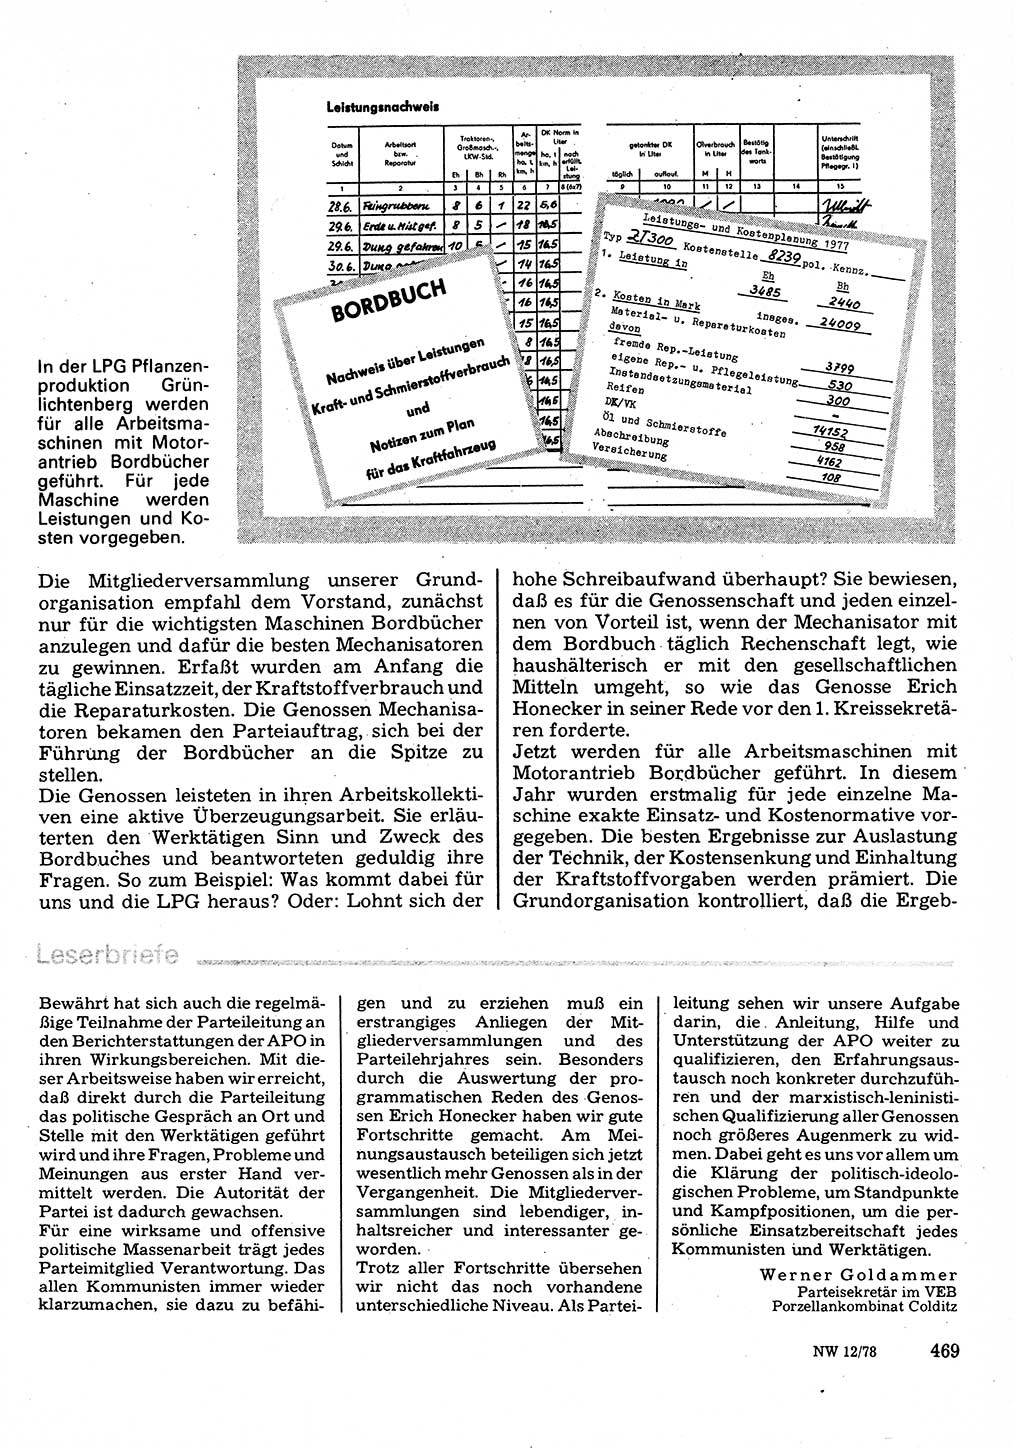 Neuer Weg (NW), Organ des Zentralkomitees (ZK) der SED (Sozialistische Einheitspartei Deutschlands) für Fragen des Parteilebens, 33. Jahrgang [Deutsche Demokratische Republik (DDR)] 1978, Seite 469 (NW ZK SED DDR 1978, S. 469)